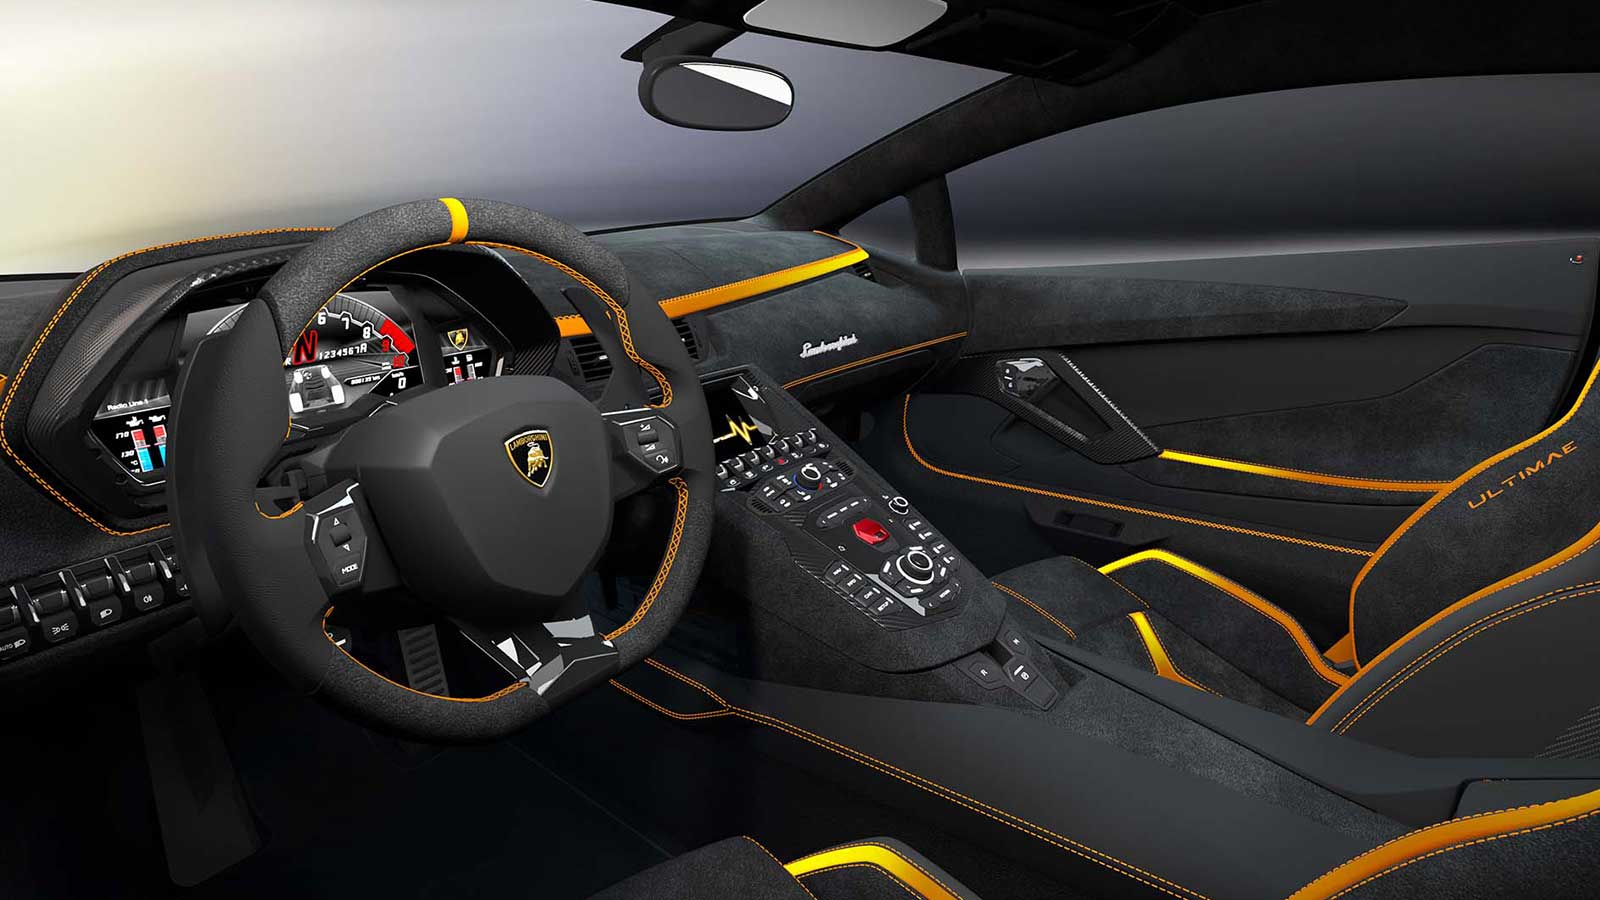 Hình ảnh bên trong chiếc Lamborghini Aventador Coupé.